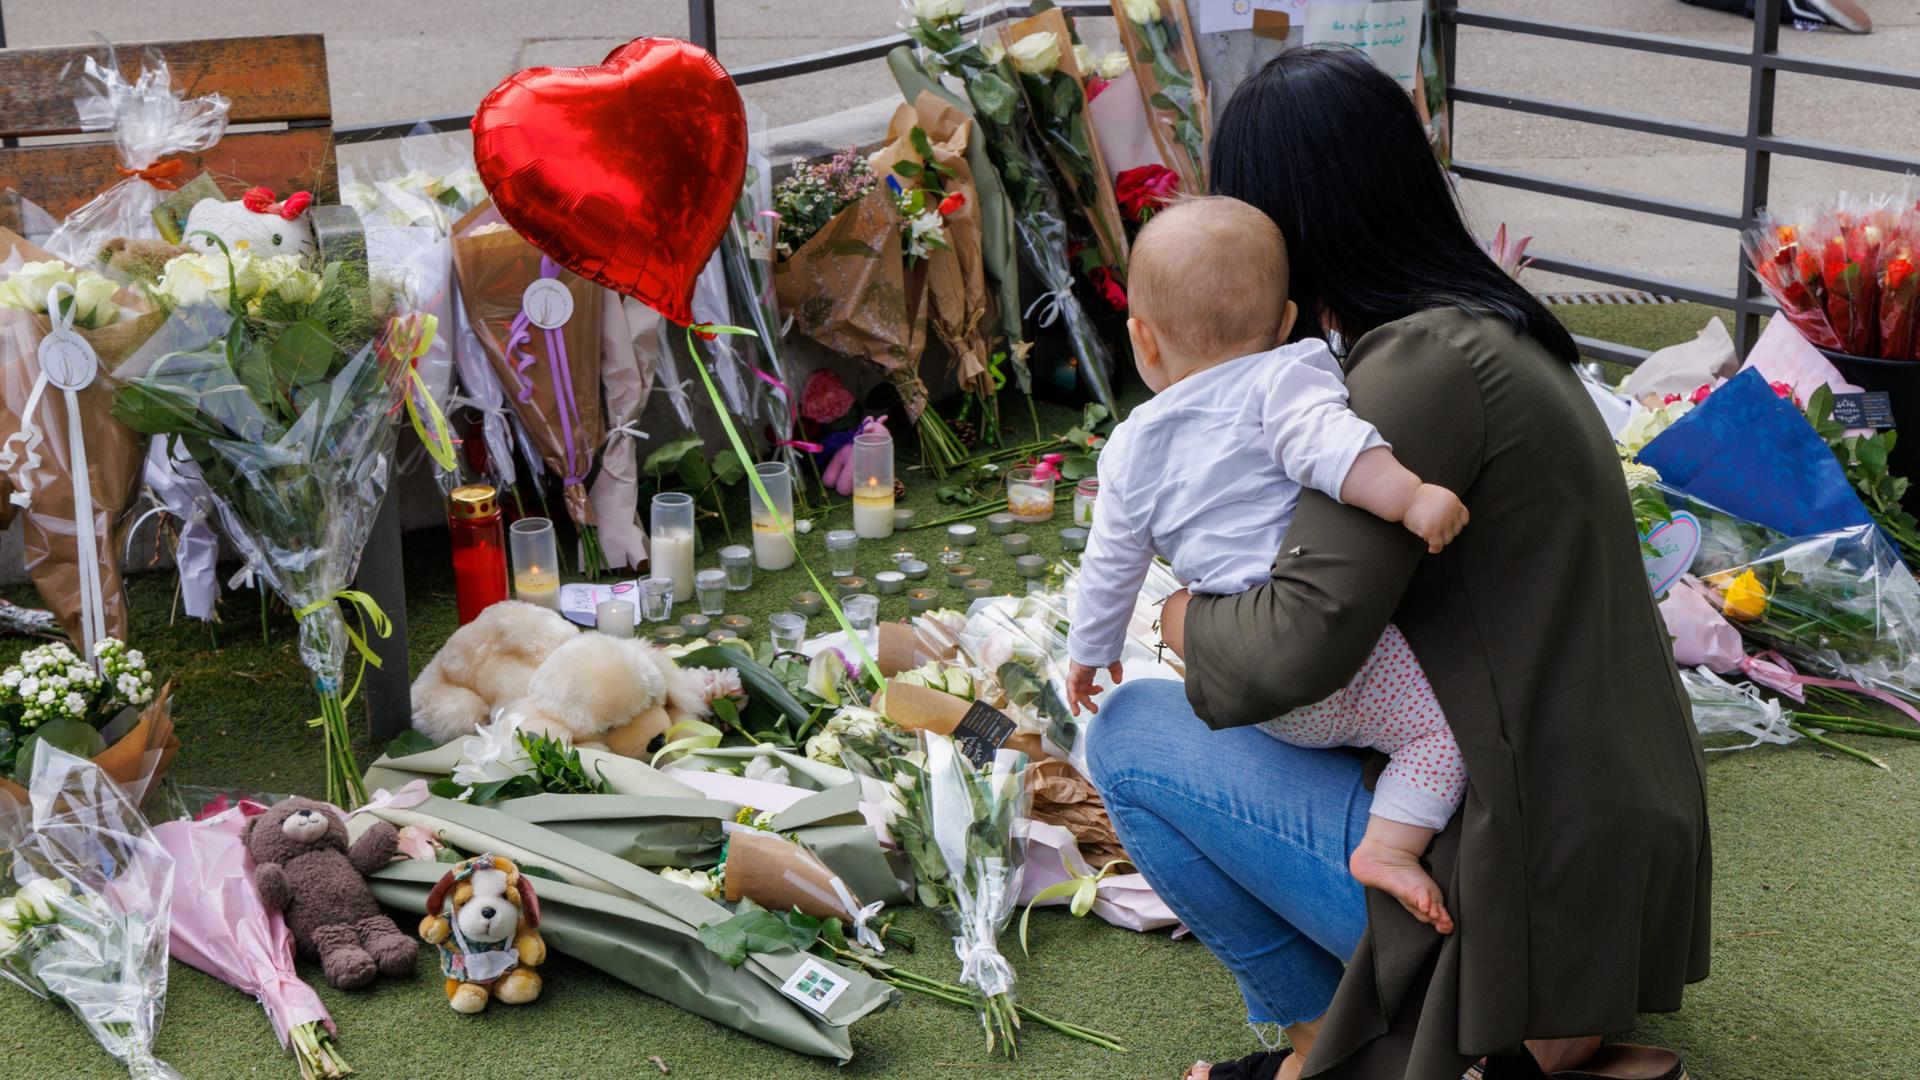 Eine Frau ist mit einem Kleinkind auf dem Arm in die Hocke gegangen und gedenkt der Opfer des Anschlags in der französischen Stadt Annecy. Auf dem BOden liegen Blumen, Stofftiere und ein LUftballon in Herzform. 